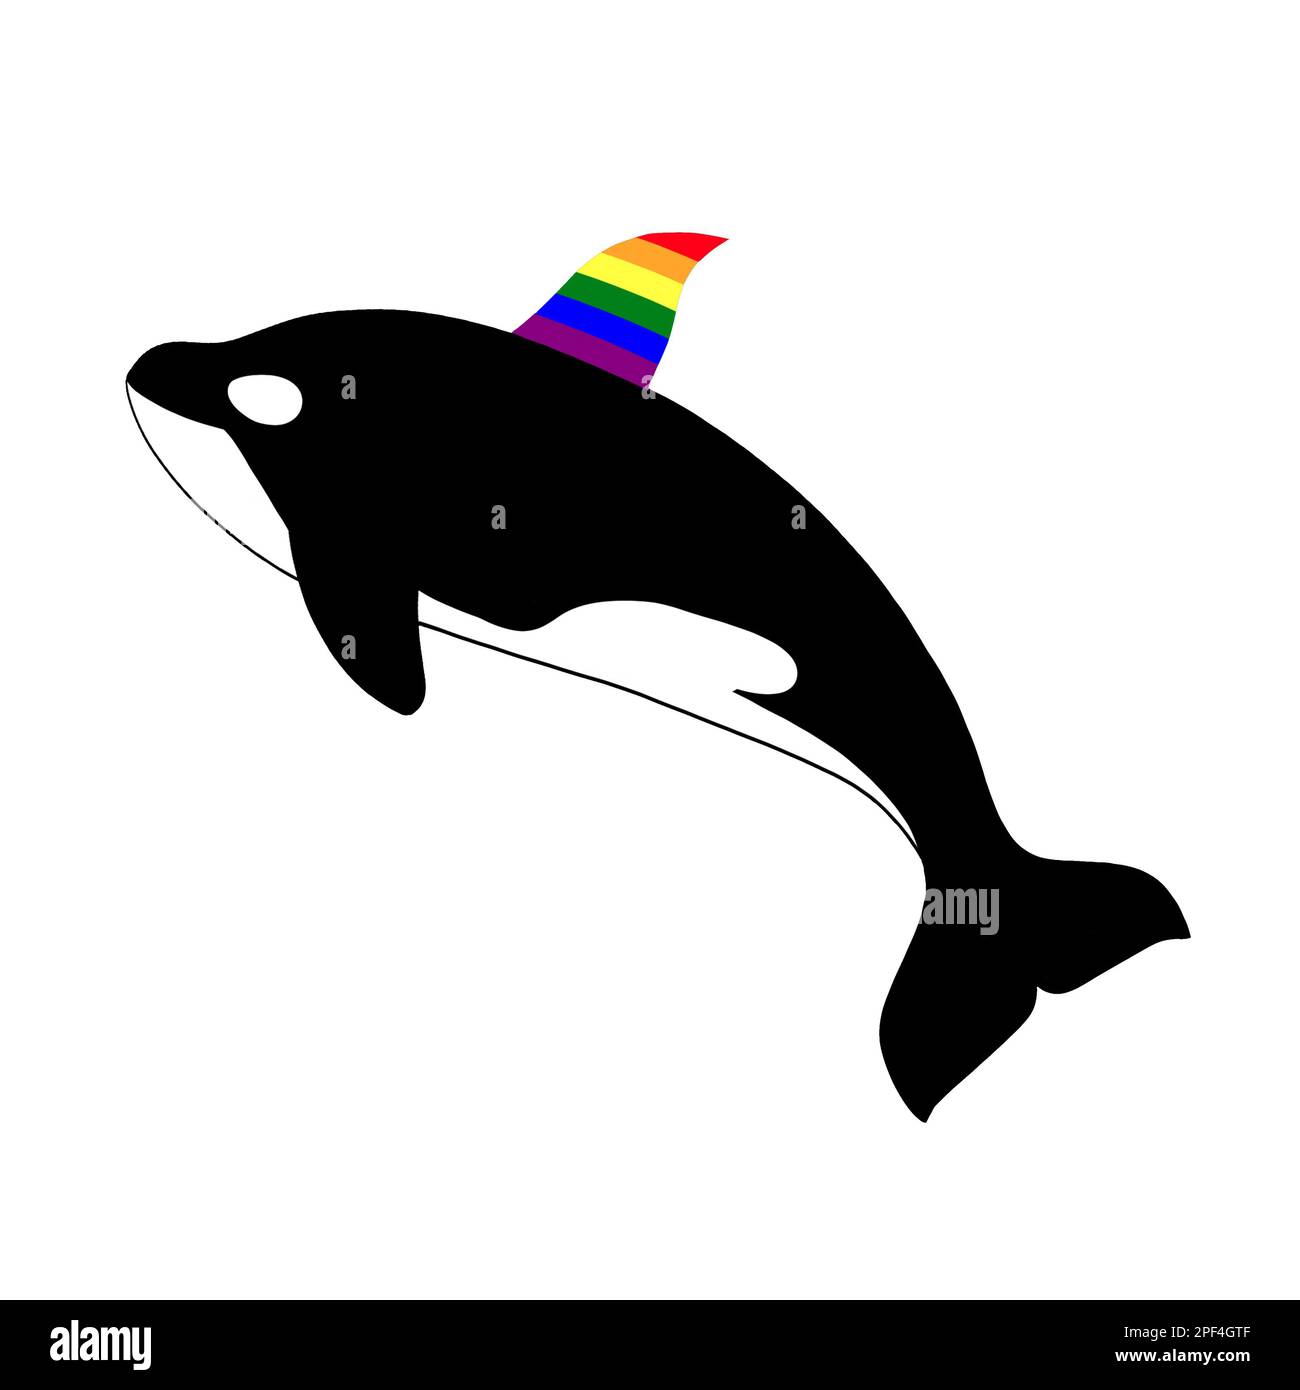 Orca-Killerwal mit schwuler Rainbow-Rückenflosse. Naturschutzkonzept für Wildtiere. Clip Art isoliert auf weißem Hintergrund. Stockfoto